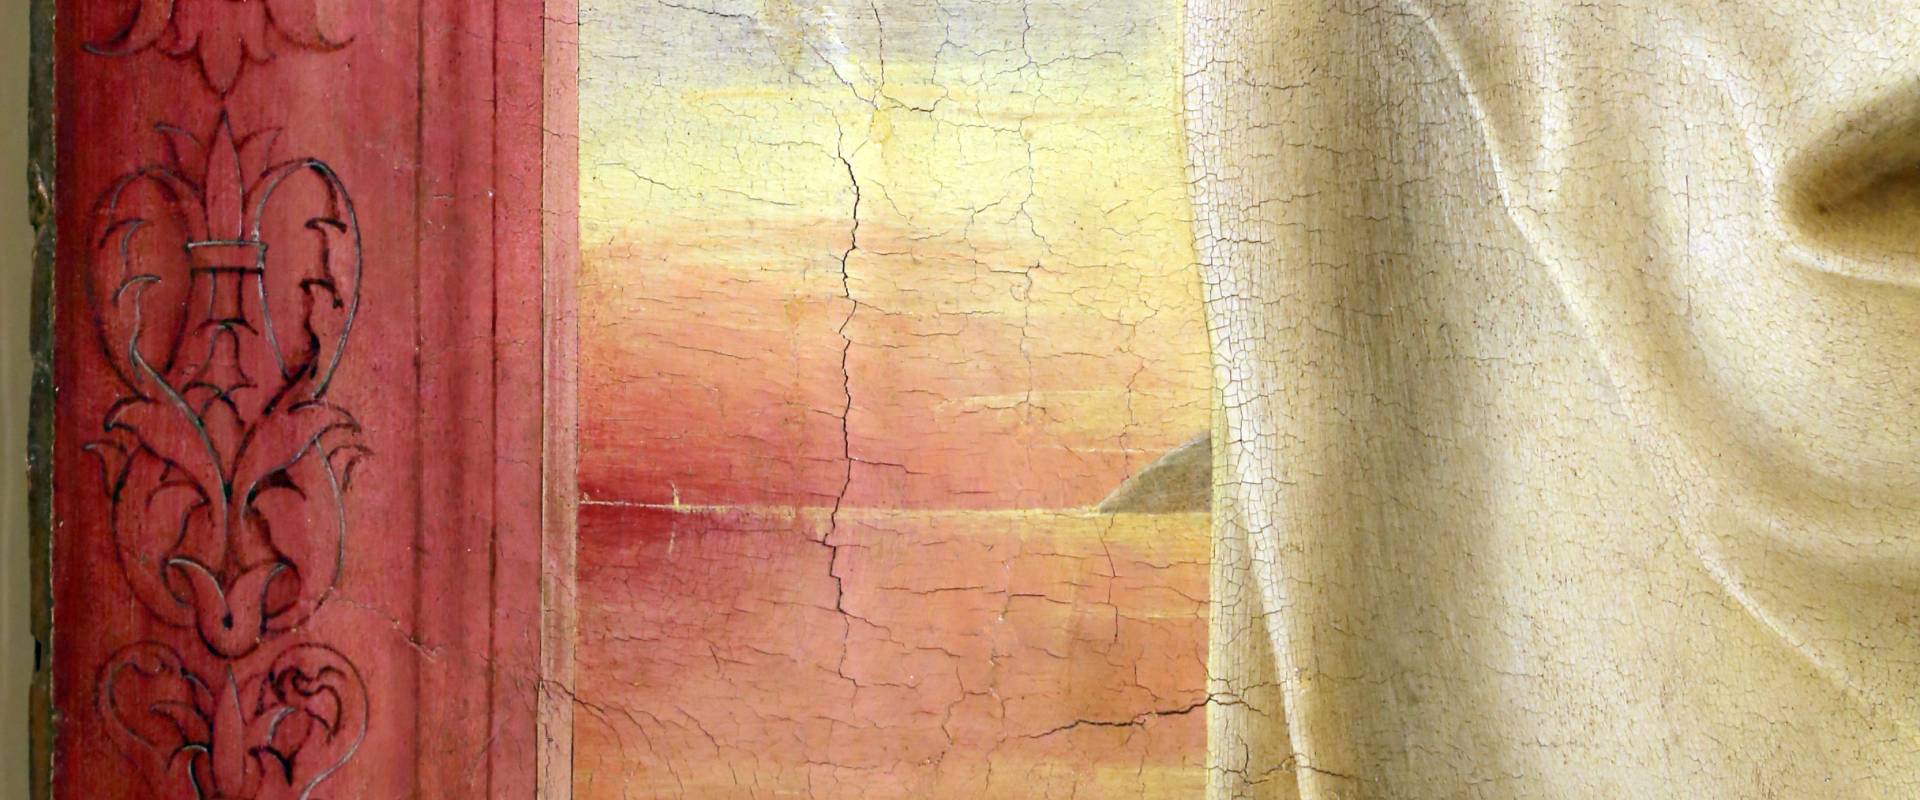 Cosmè tura, sant'antonio da padova, 1484-88 ca. 06 tramonto o alba foto di Sailko